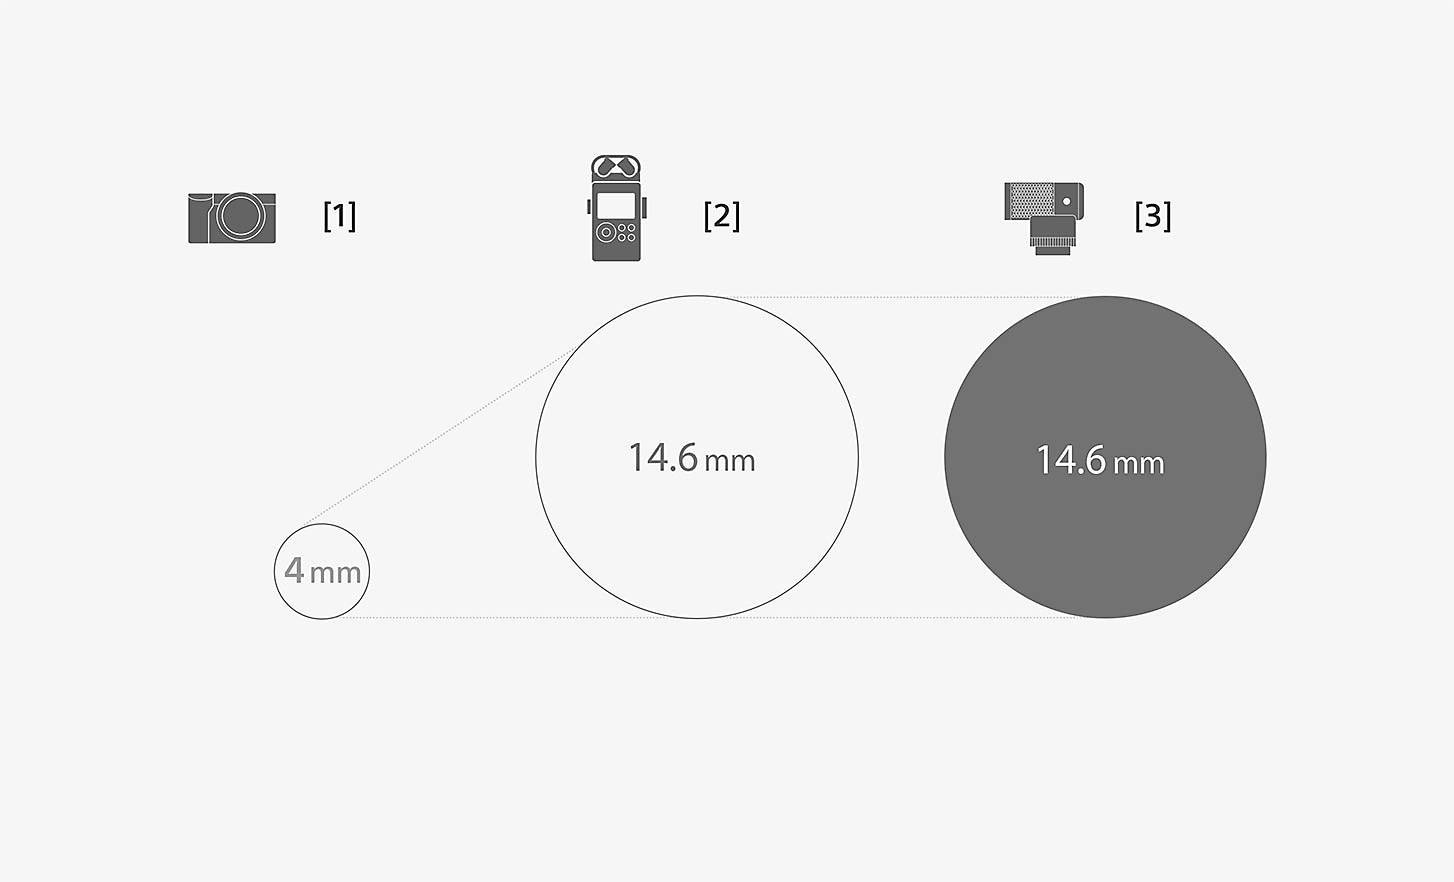 Зображення, на якому порівнюються розміри капсули мікрофона ECM-G1 і стандартного вбудованого мікрофона